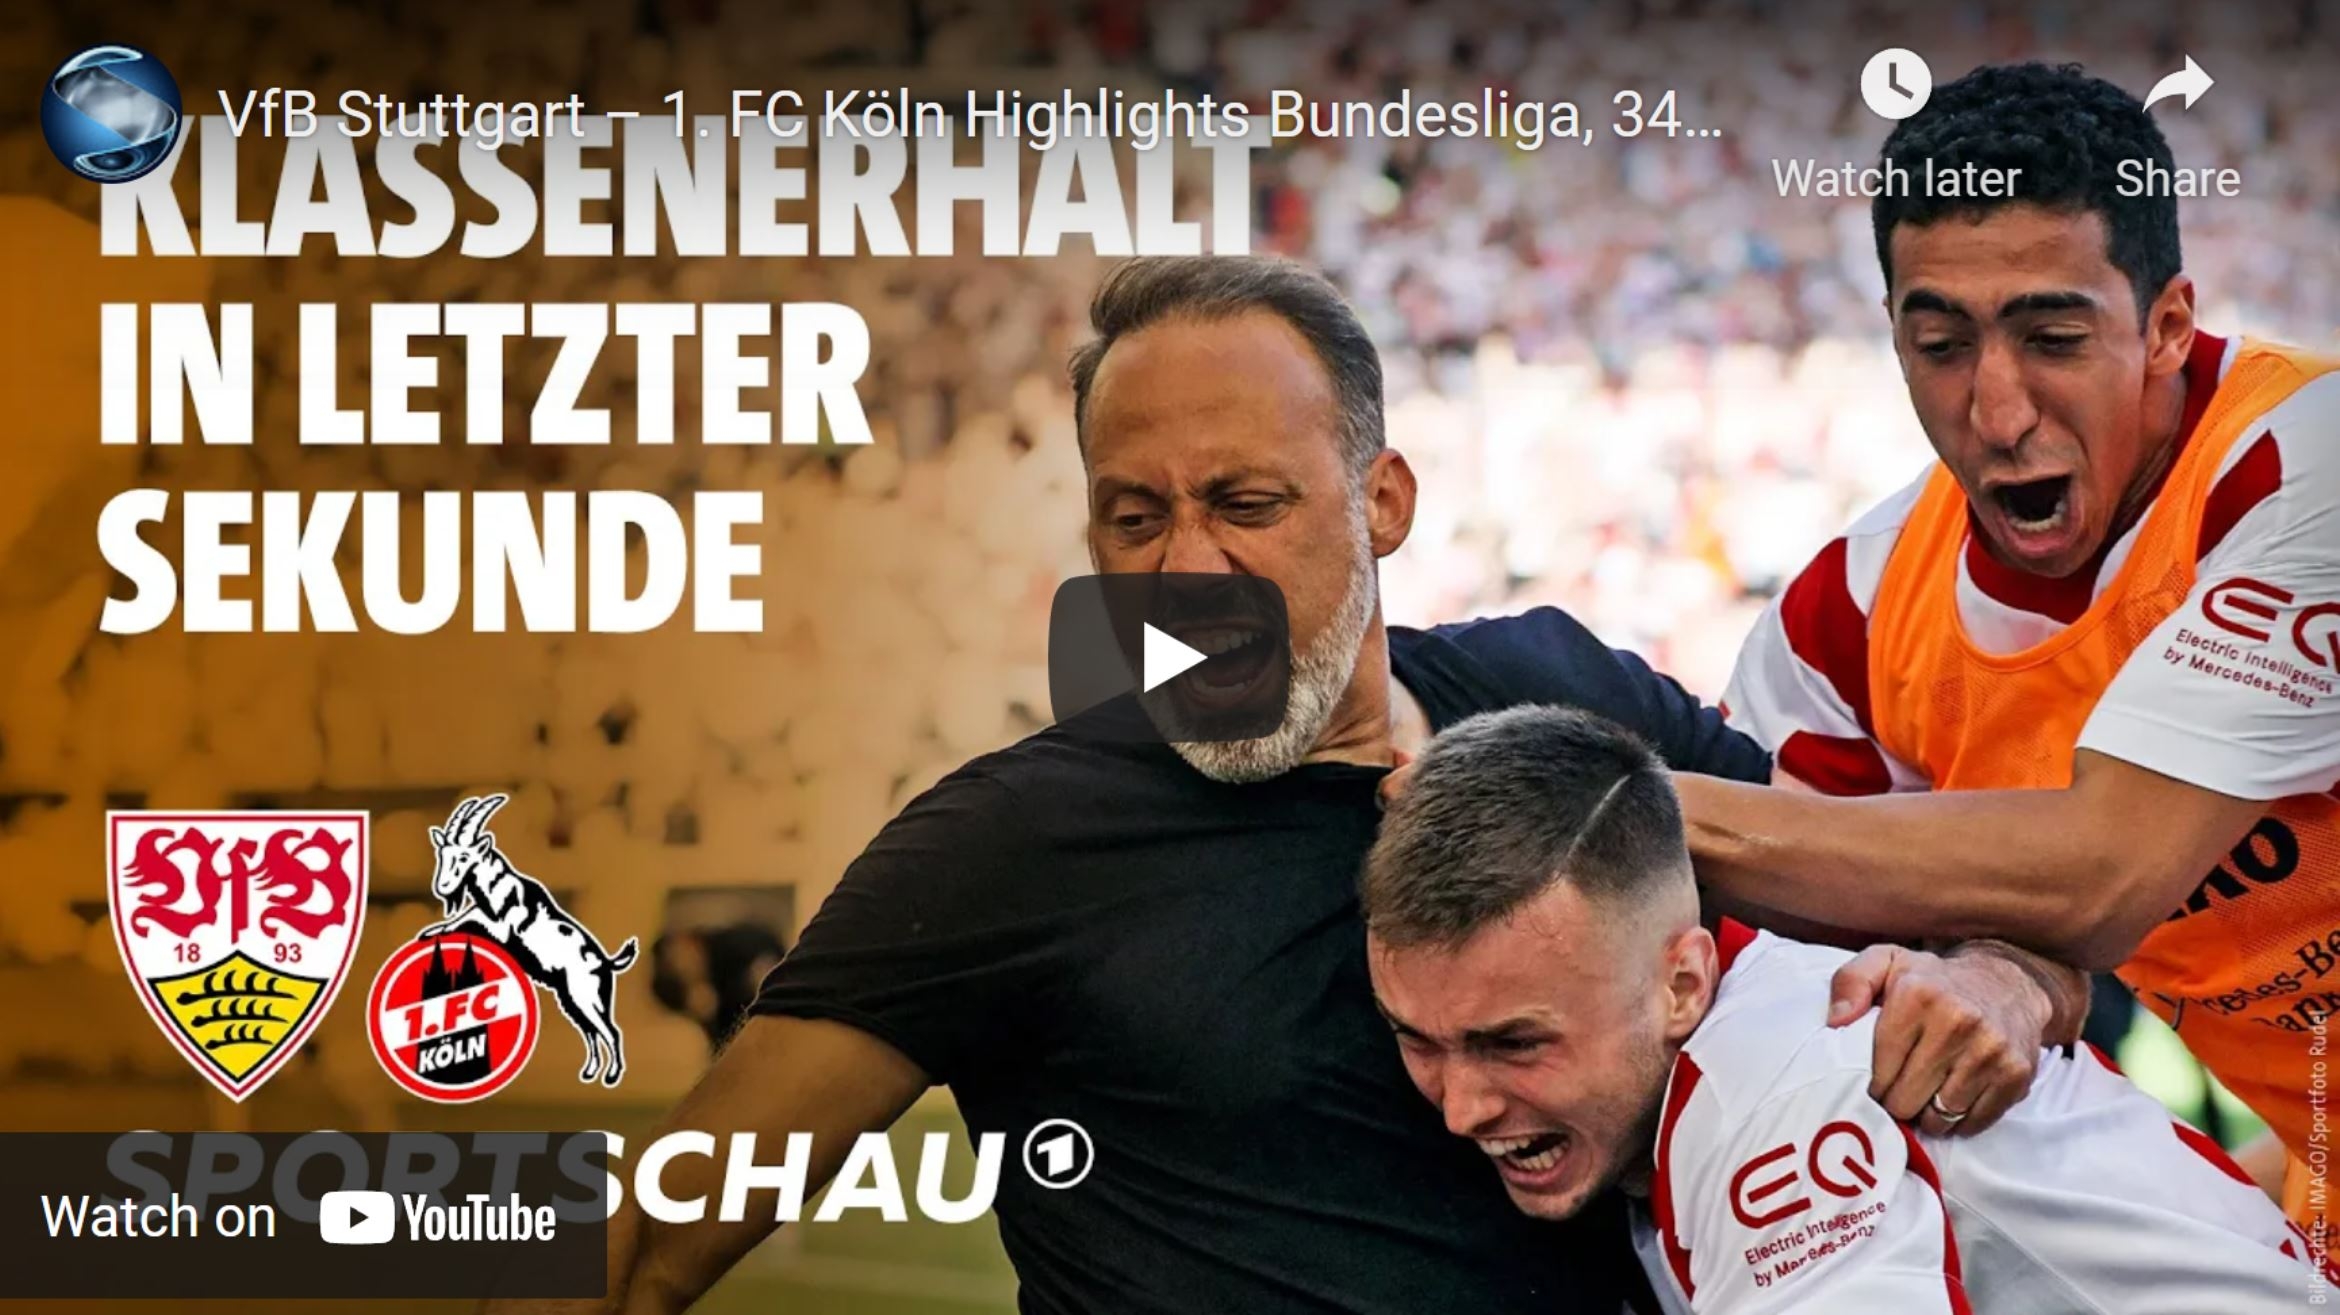 Die Bundesliga auf dem YouTube-Kanal der "Sportschau" - 